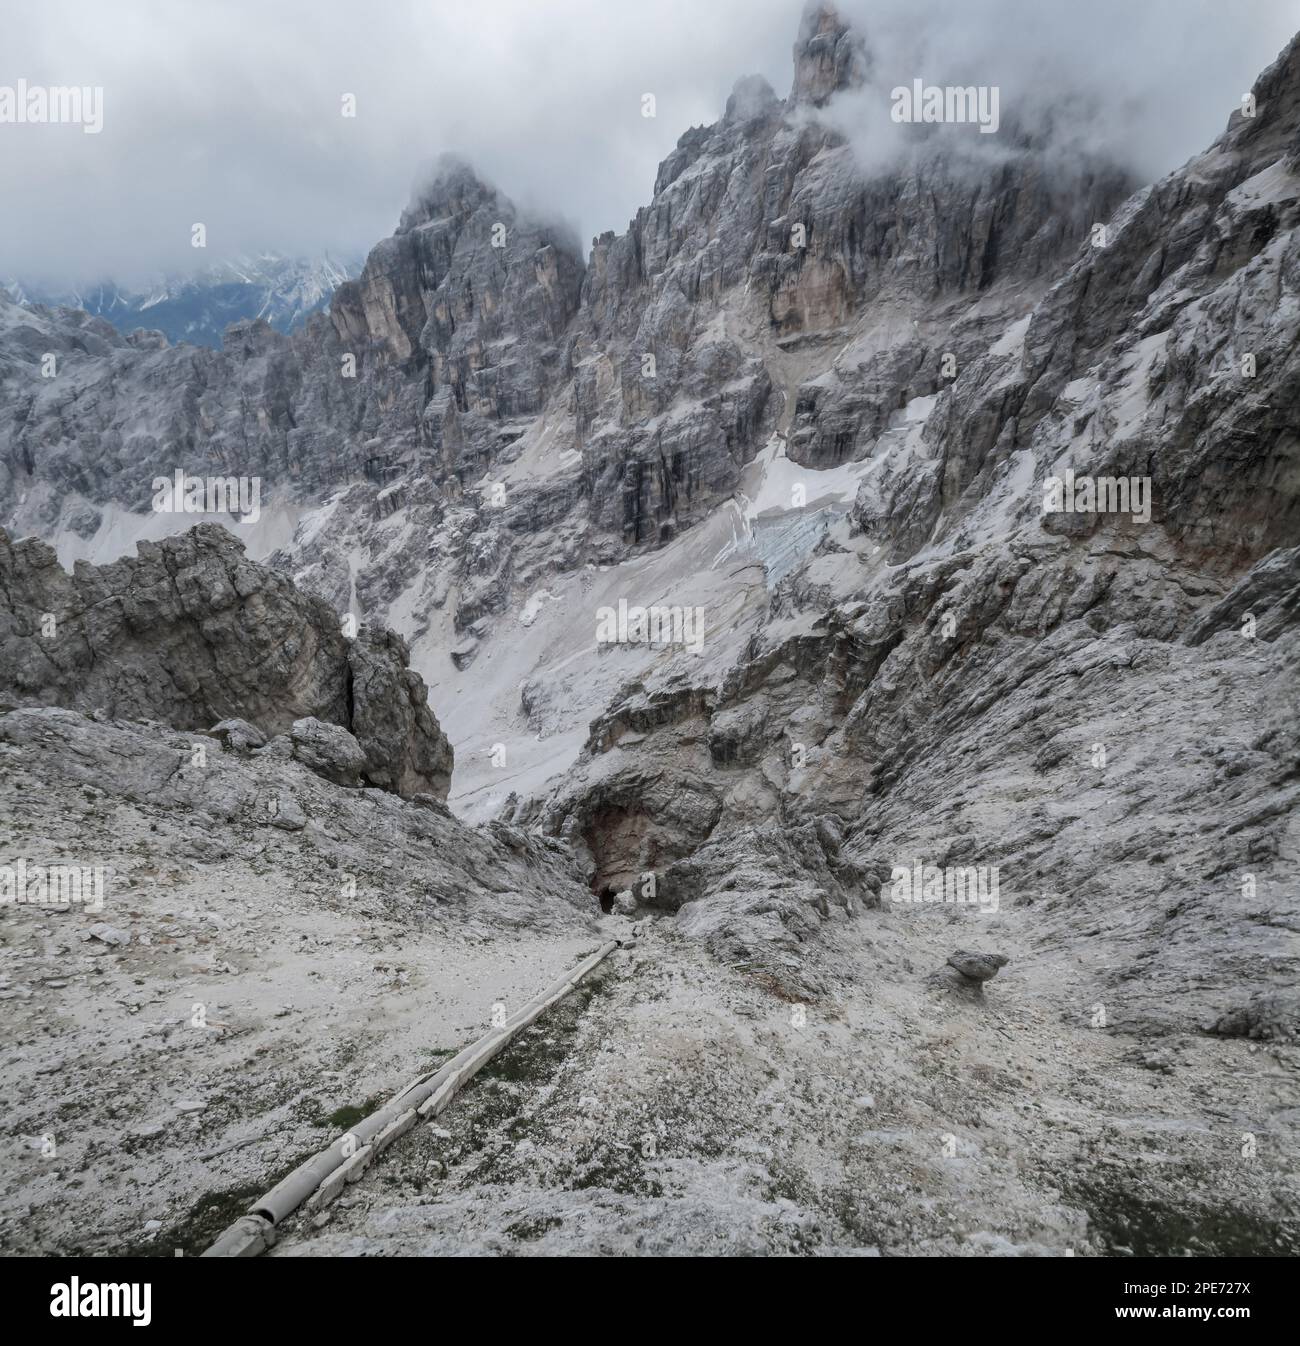 Tuyau d'égout en béton sortant de l'abri et tombant profondément dans une pente de montagne, Italie Dolomites. Dolomites, Italie, Dolomites, Italie, Europe Banque D'Images